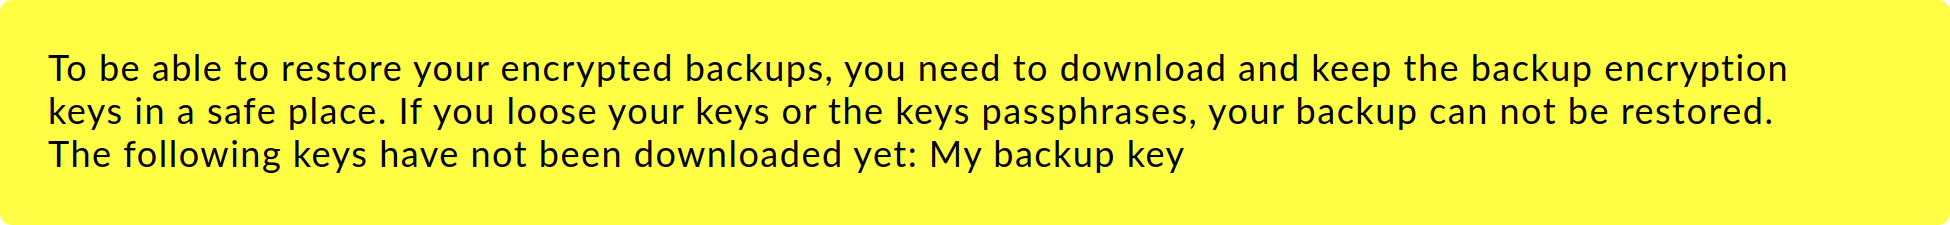 Meldung, dass die Backup-Schlüssel noch nicht heruntergeladen wurden.